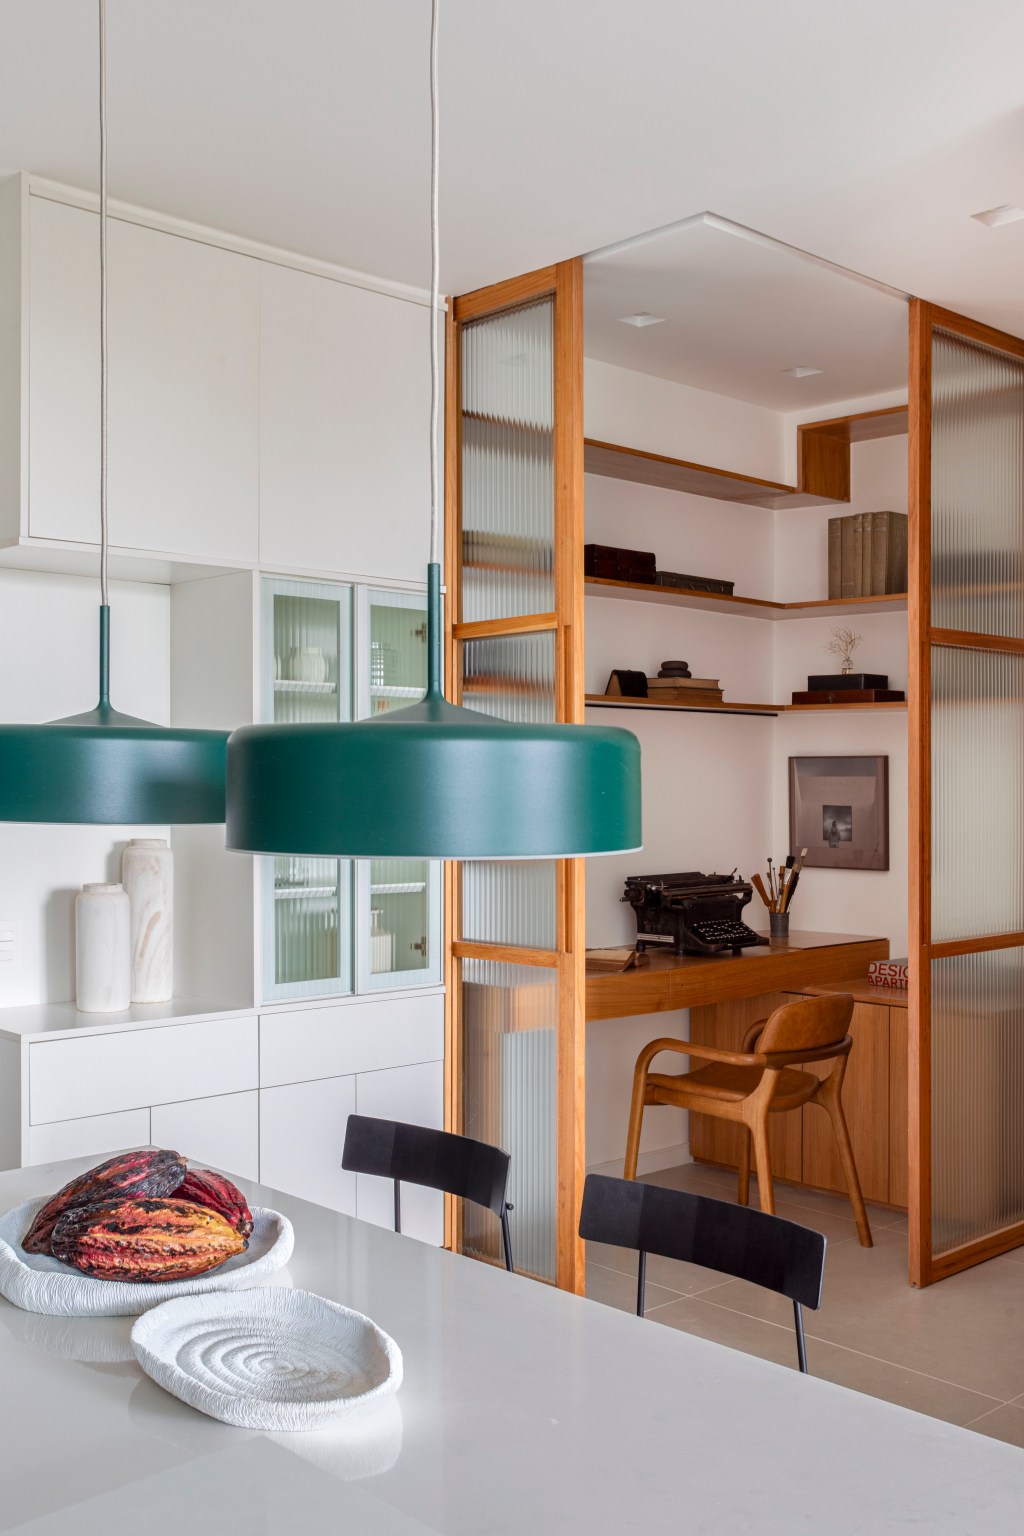 Branco e madeira criam décor cozy em apartamento de 70 m². Projeto de Rafael Ramos. Na foto, home office embutido na marcenaria.